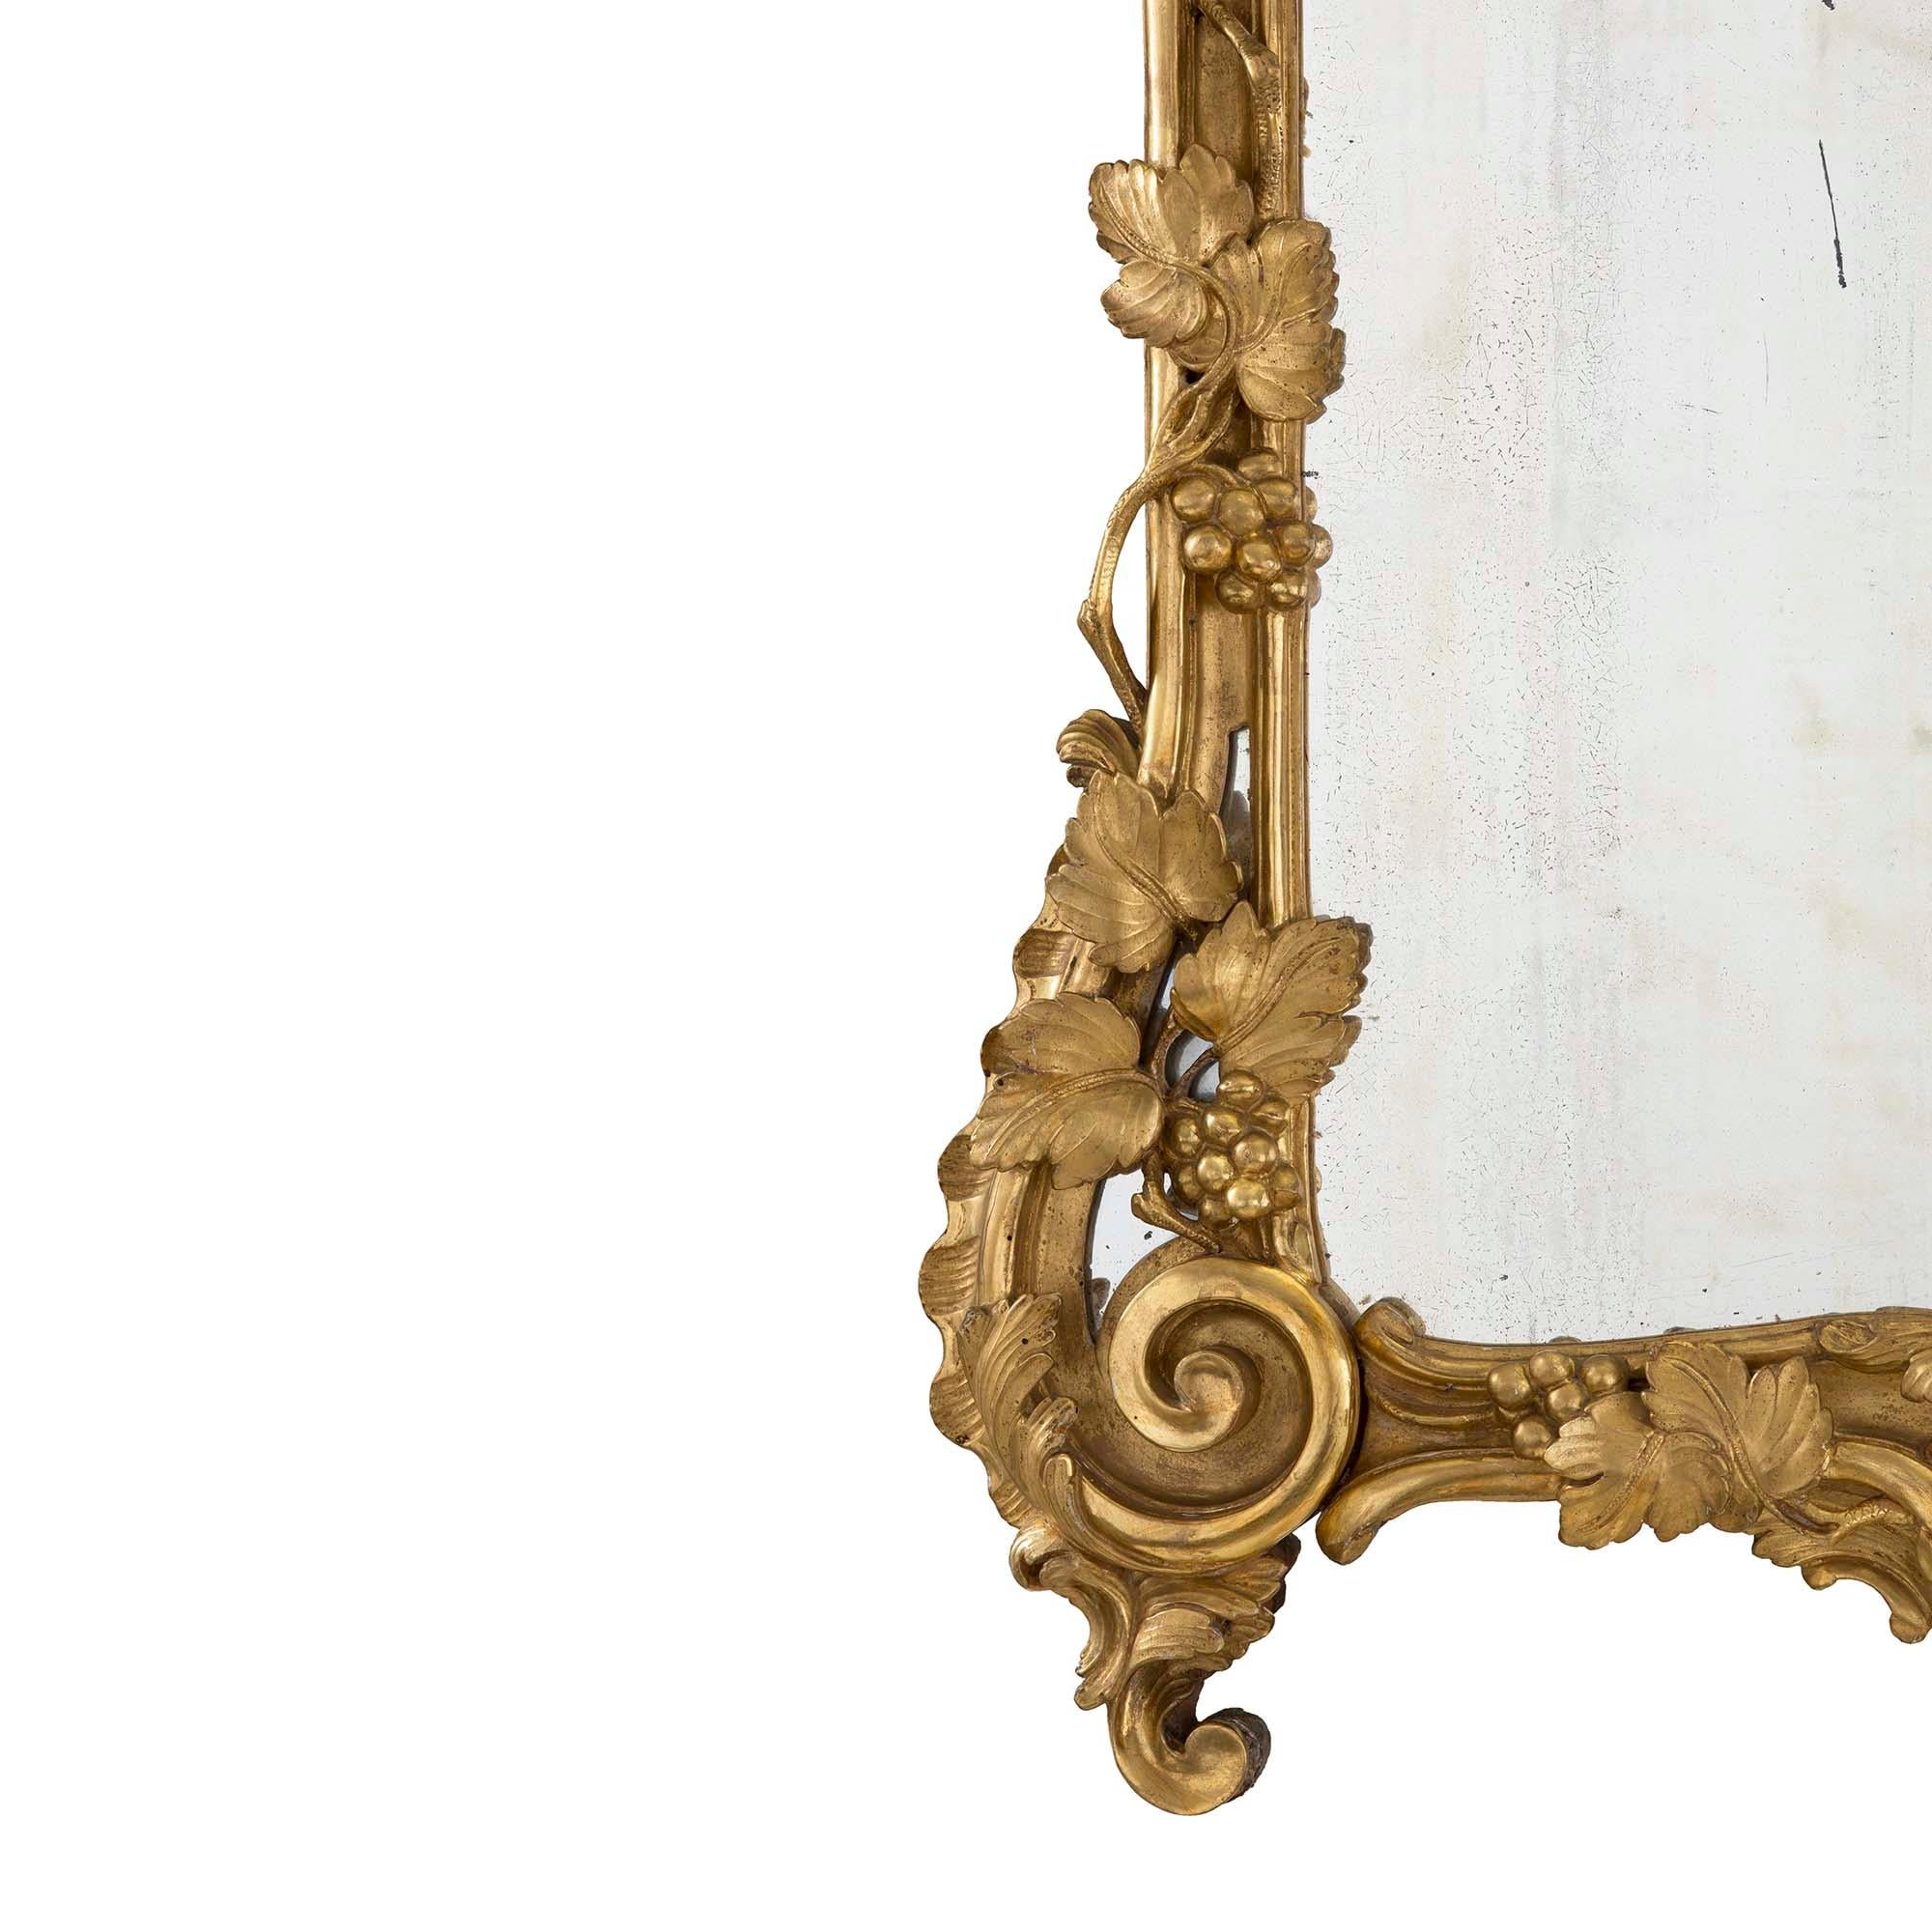 Un charmant miroir en bois doré du début du 18e siècle, période Régence, vers 1720. La plaque de miroir d'origine est encadrée par une bordure en bois doré richement sculptée et merveilleusement détaillée, présentant de beaux mouvements de volutes